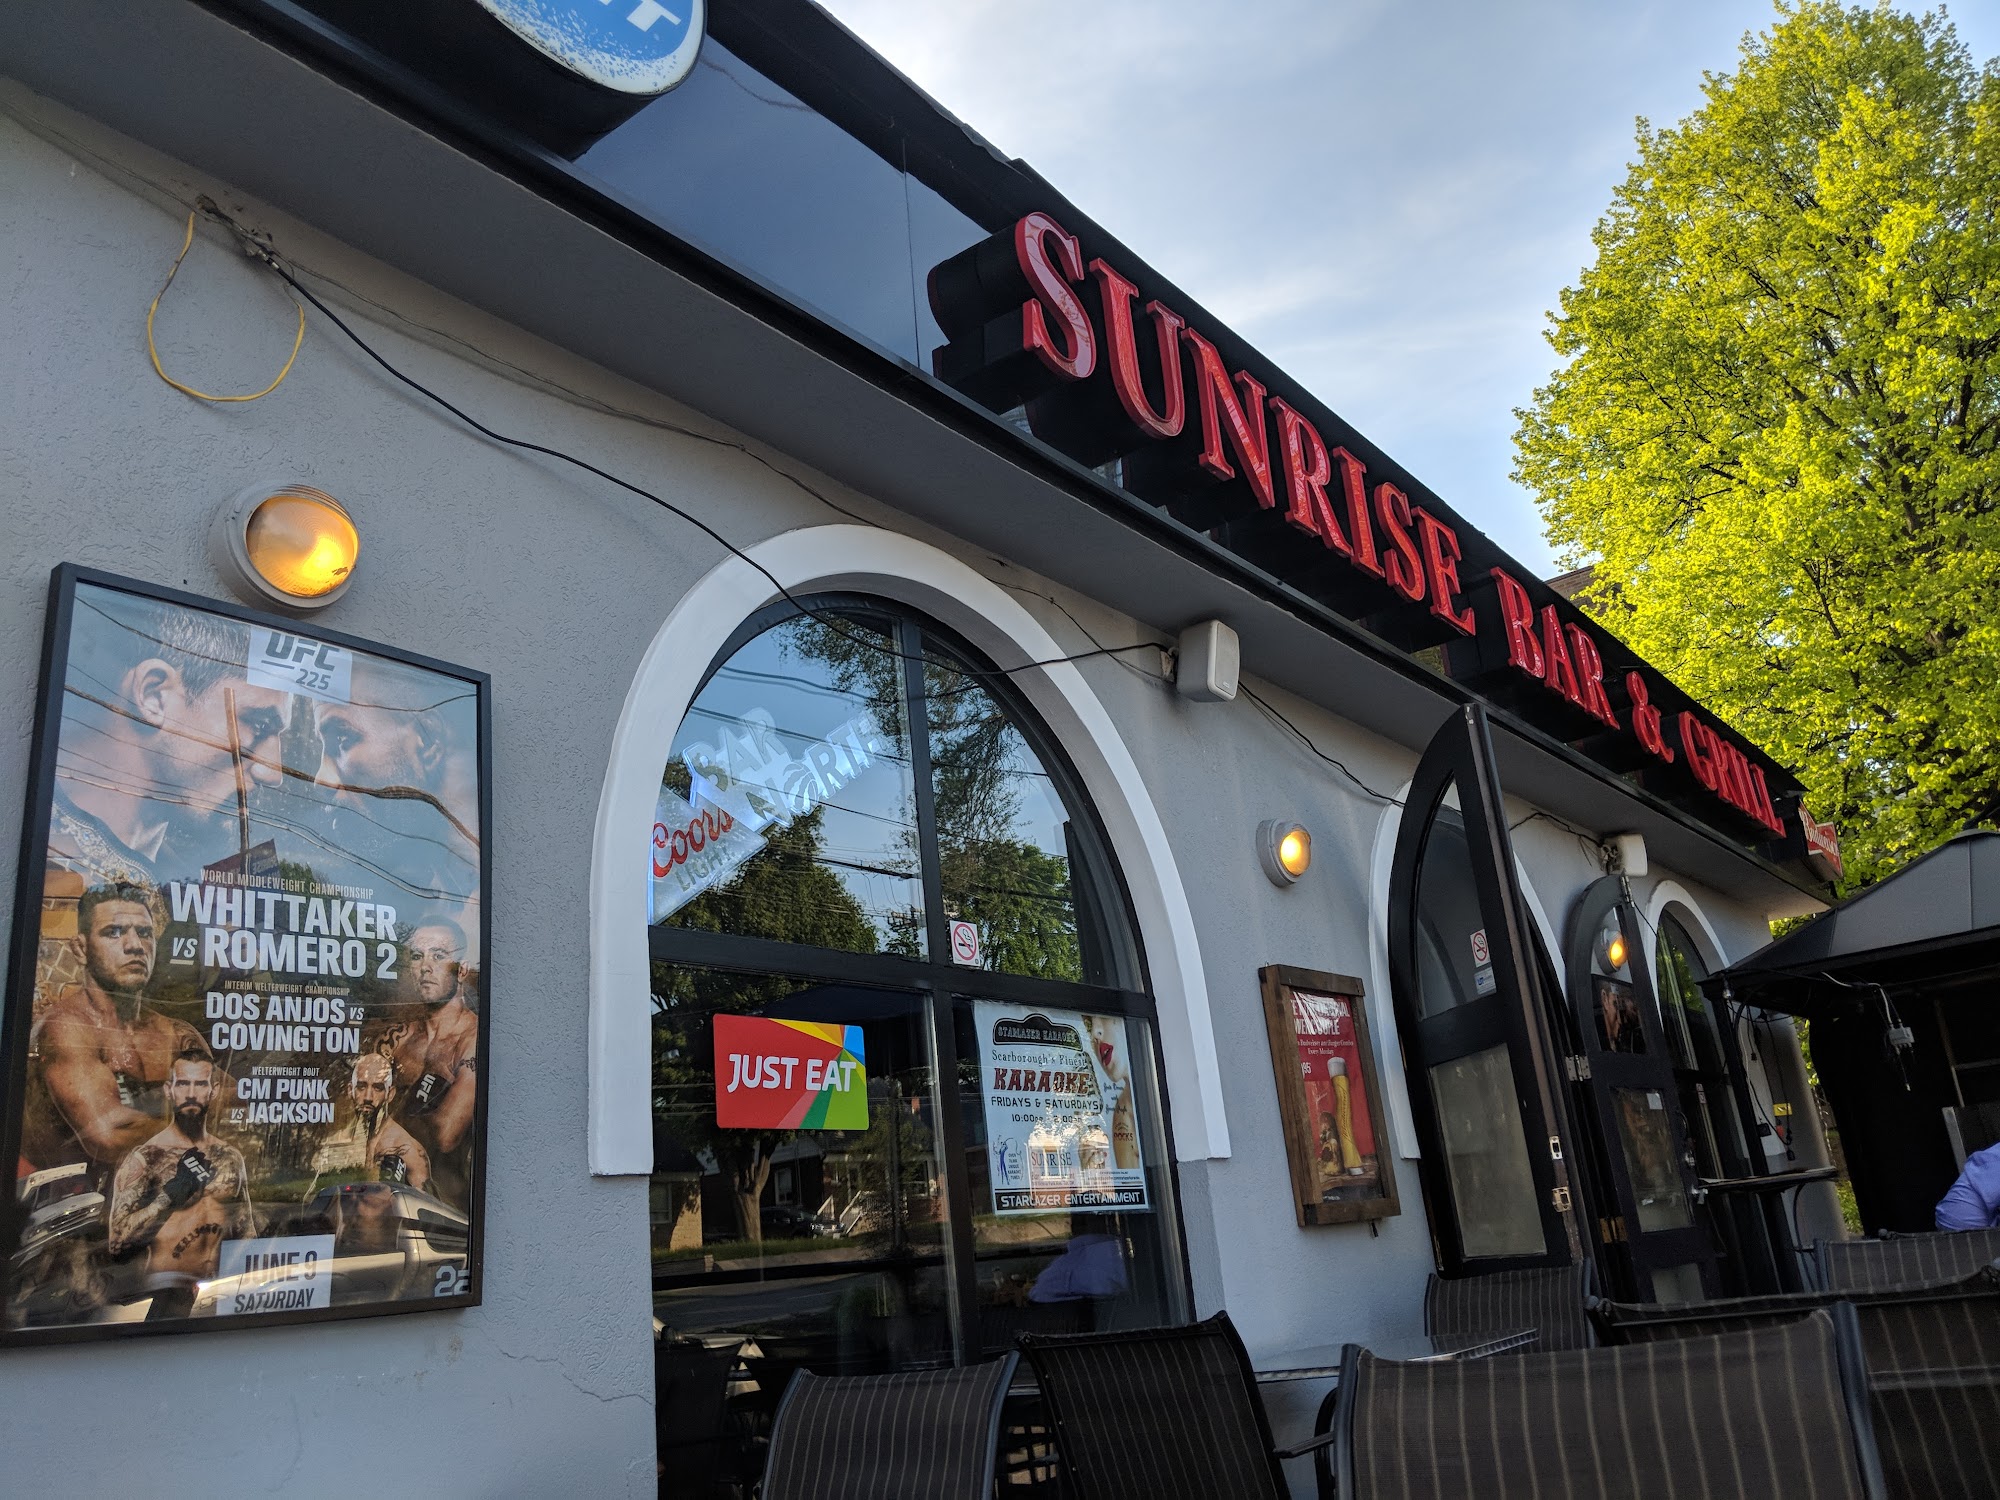 Sunrise Bar & Grill